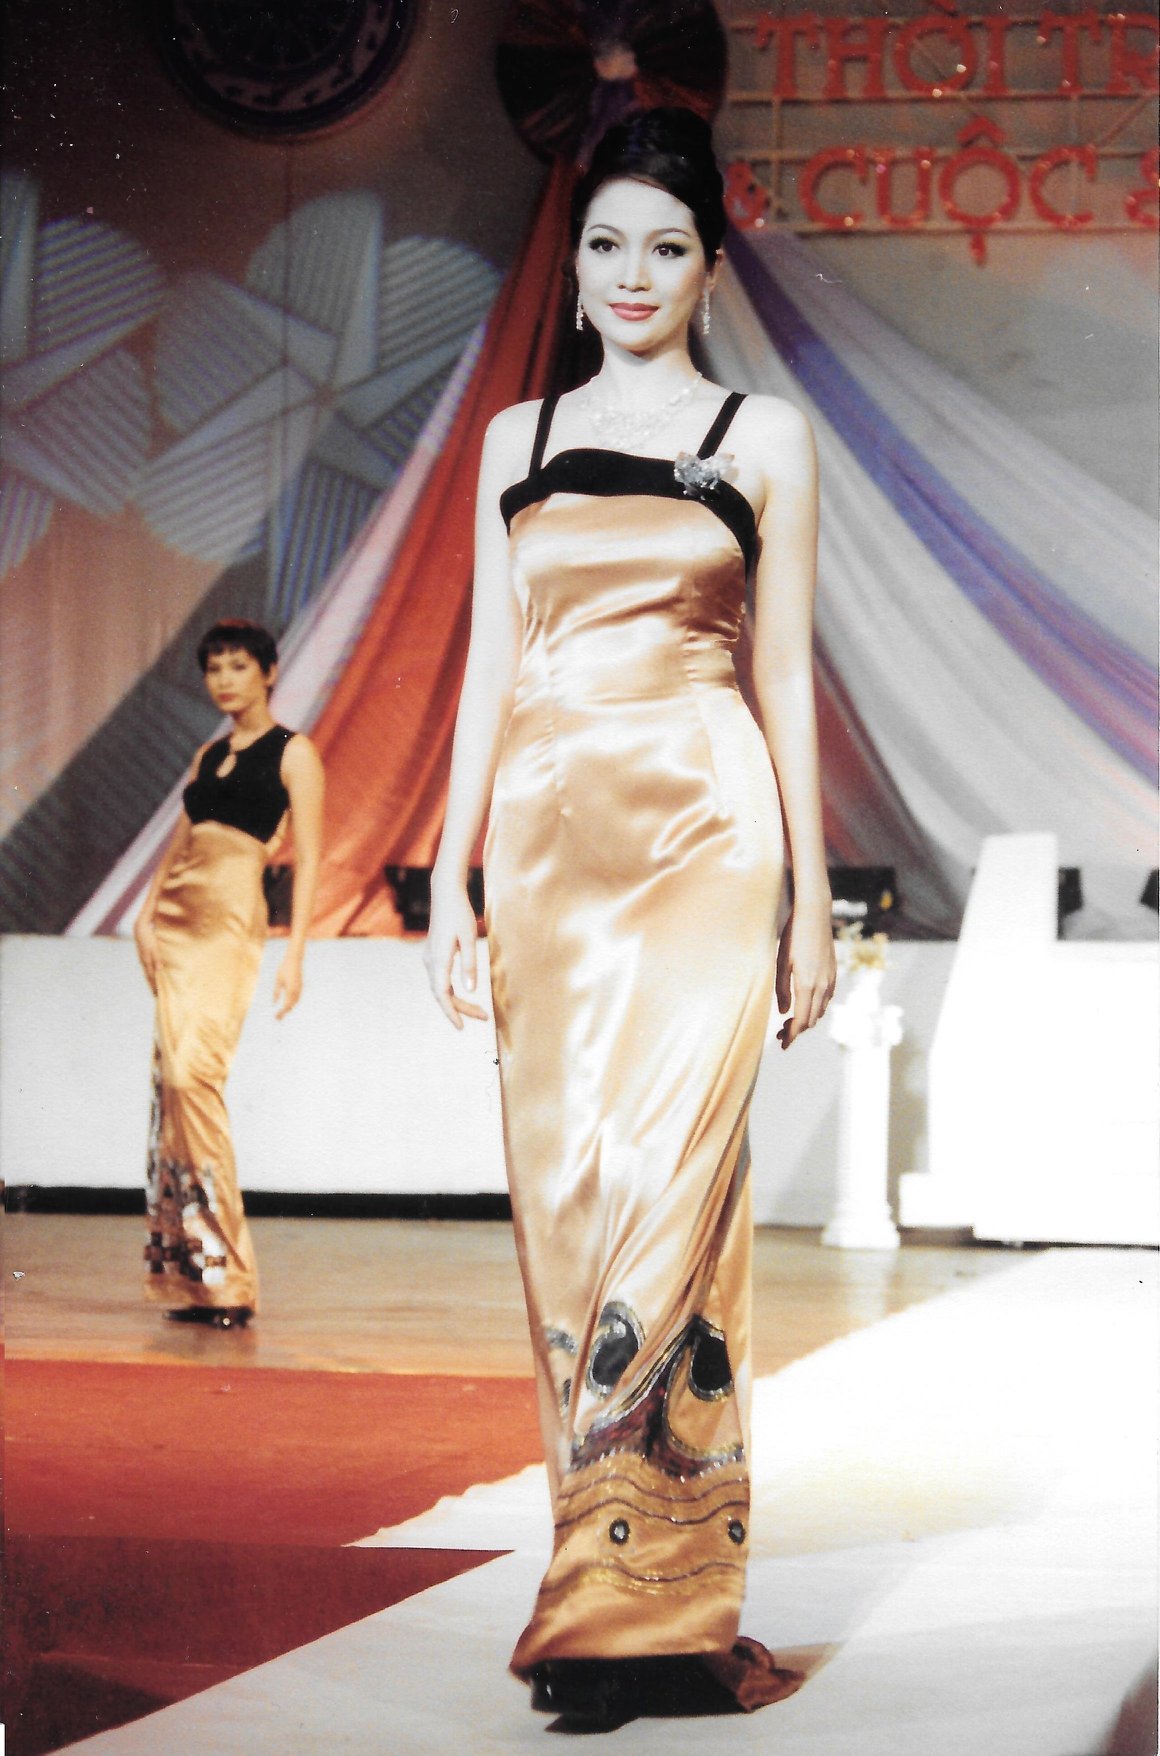 Sau các cuộc thi, hoa hậu Thiên Nga vẫn tập trung cho con đường học tập. Thi thoảng chị nhận lời biểu diễn cho một số chương trình thời trang, nghệ thuật. Trong ảnh là buổi biểu diễn của hoa hậu Thiên Nga trong chương trình Thời trang và Cuộc sống năm 2000. 